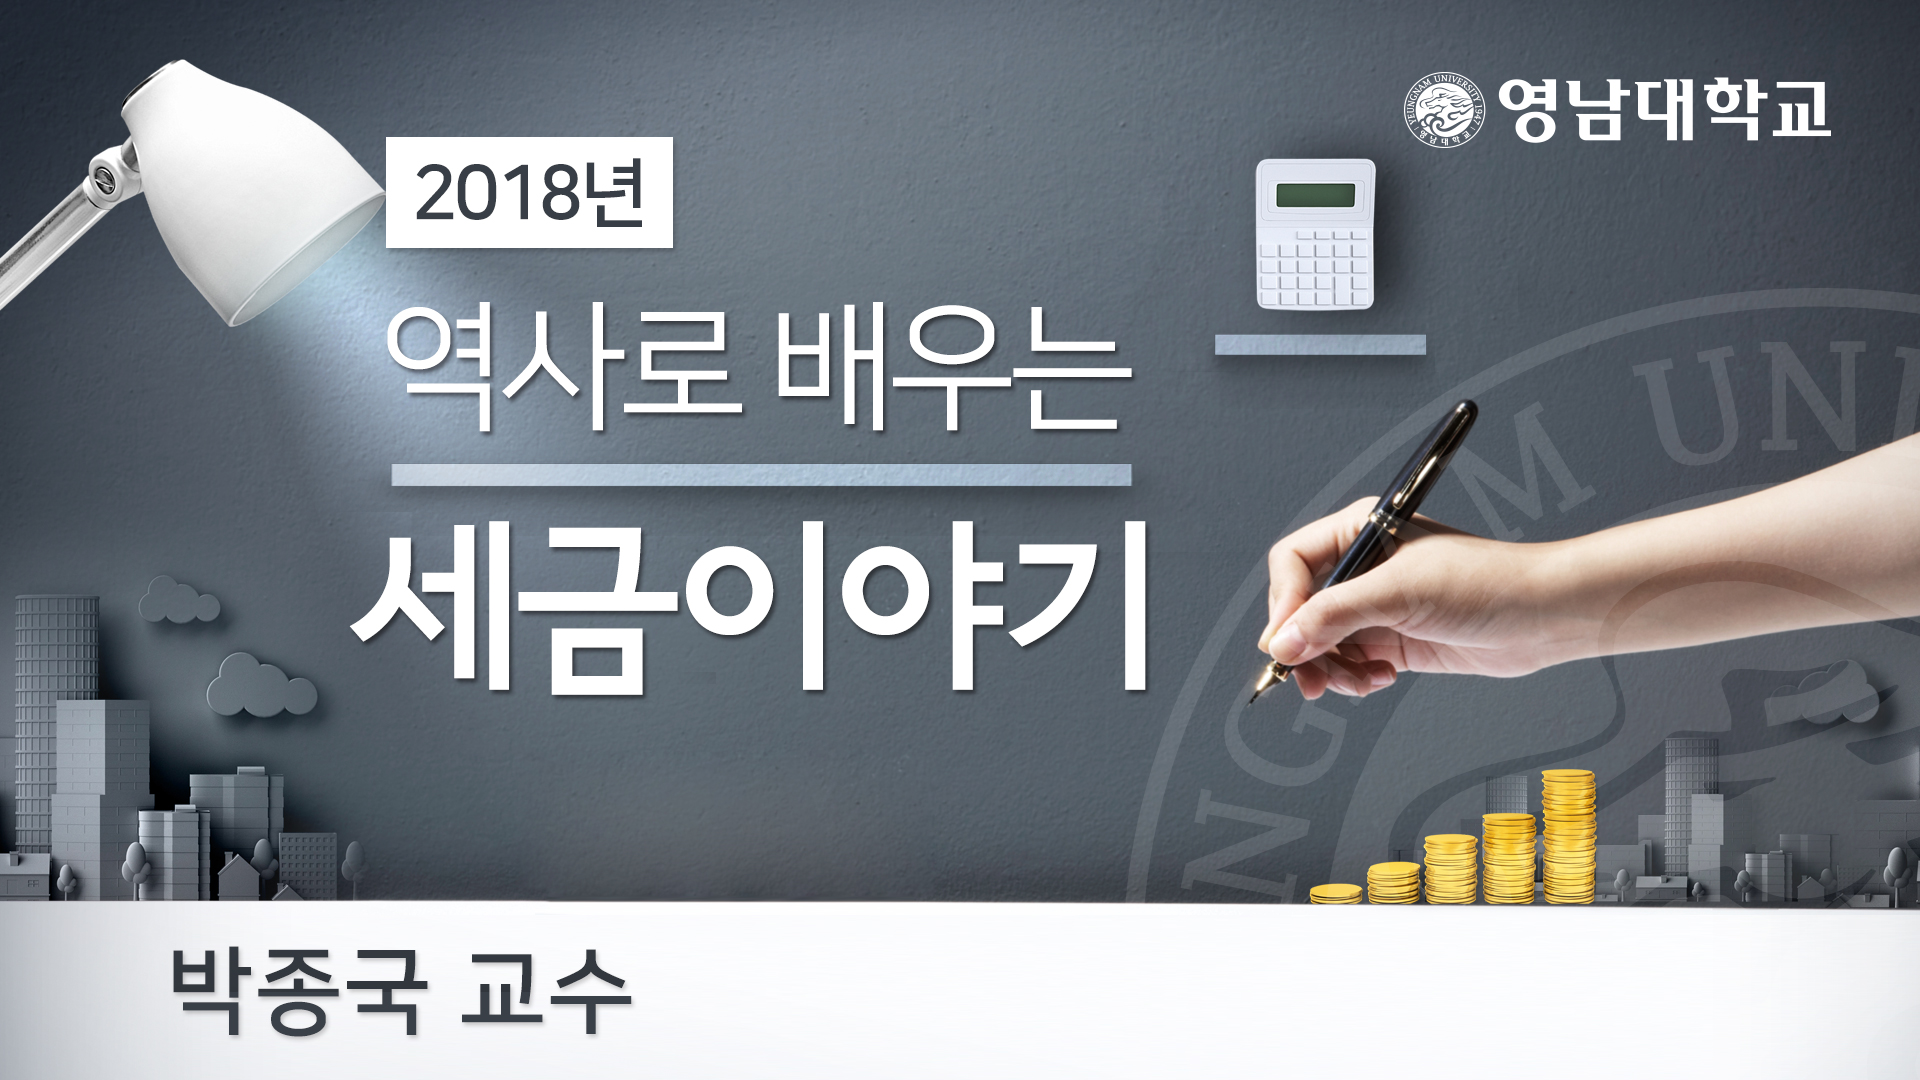 역사로 배우는 세금이야기 개강일 2018-11-16 종강일 2019-02-28 강좌상태 종료